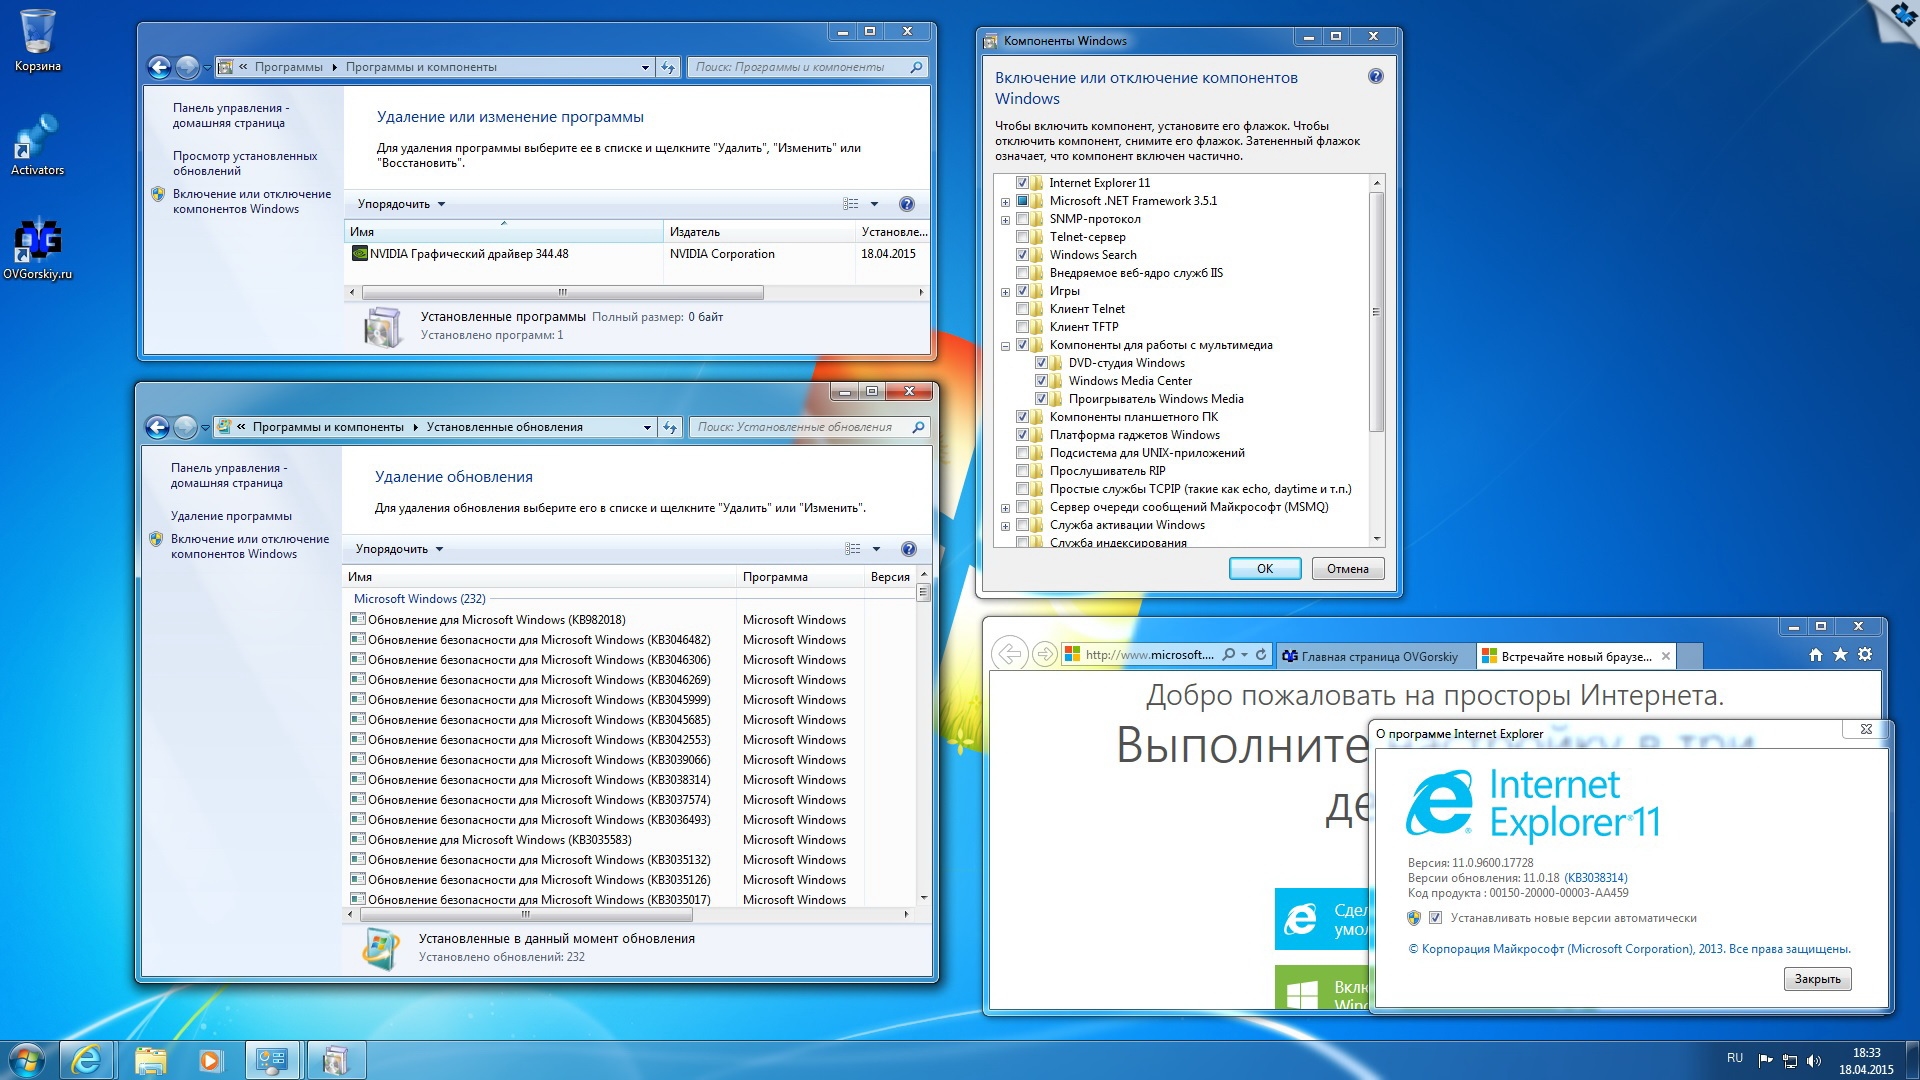 Windows 7 максимальная x64 Key. Windows 7 Ultimate sp1 x64 OVGORSKIY. Ключ продукта для Windows 7 Ultimate x64. Windows 7 максимальная языковые обновления.